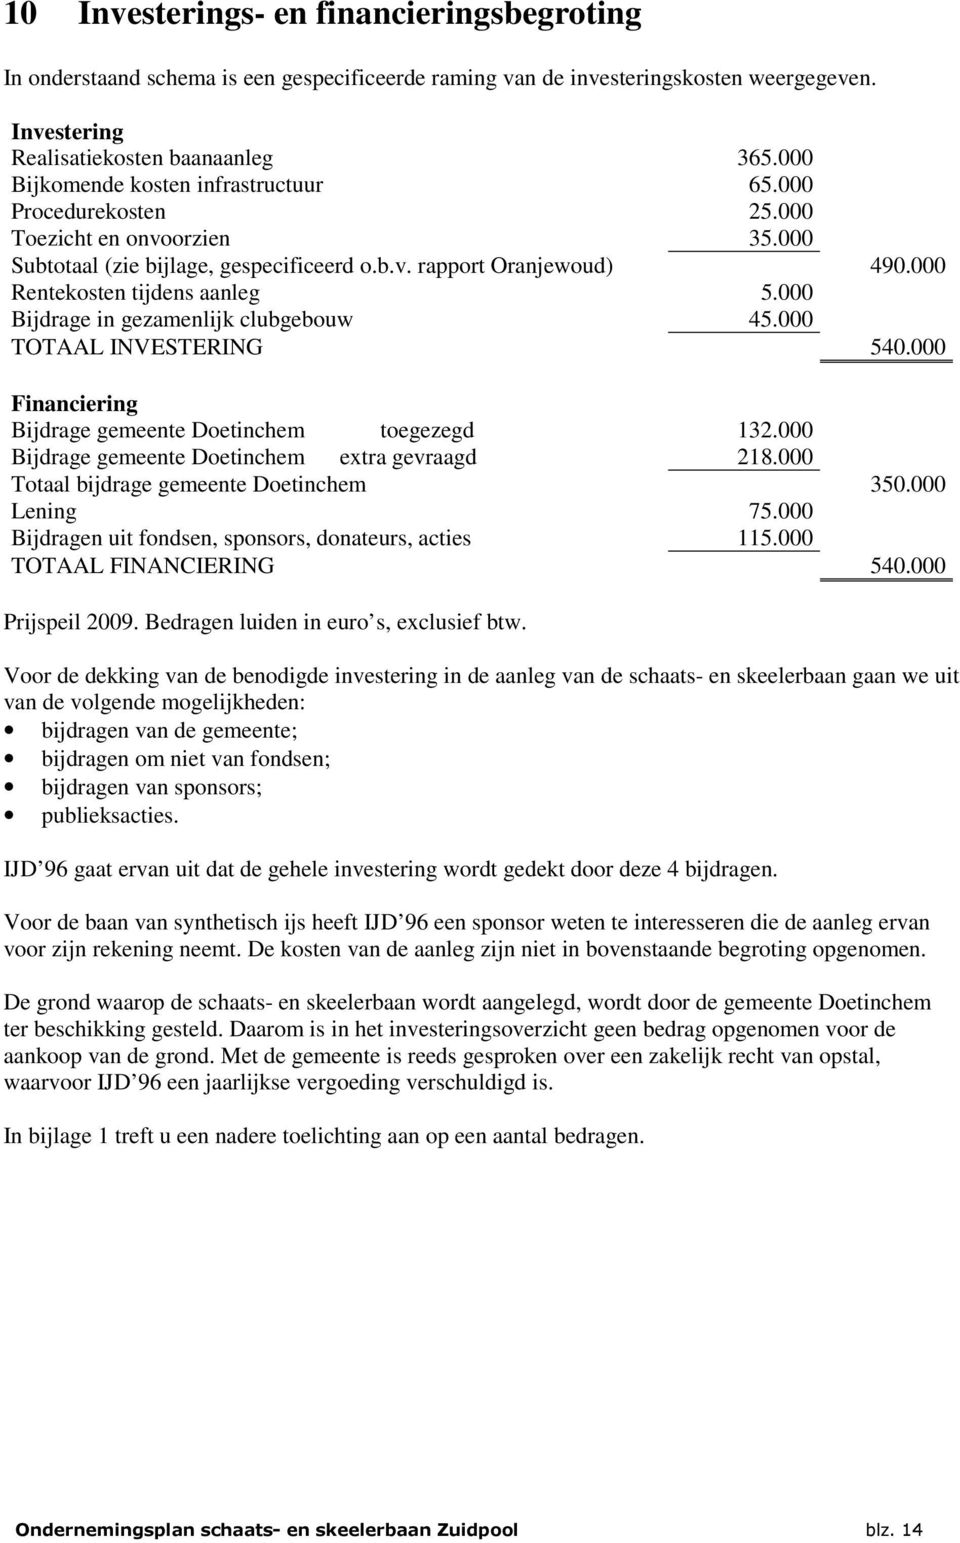 000 Bijdrage in gezamenlijk clubgebouw 45.000 TOTAAL INVESTERING 540.000 Financiering Bijdrage gemeente Doetinchem toegezegd 132.000 Bijdrage gemeente Doetinchem extra gevraagd 218.